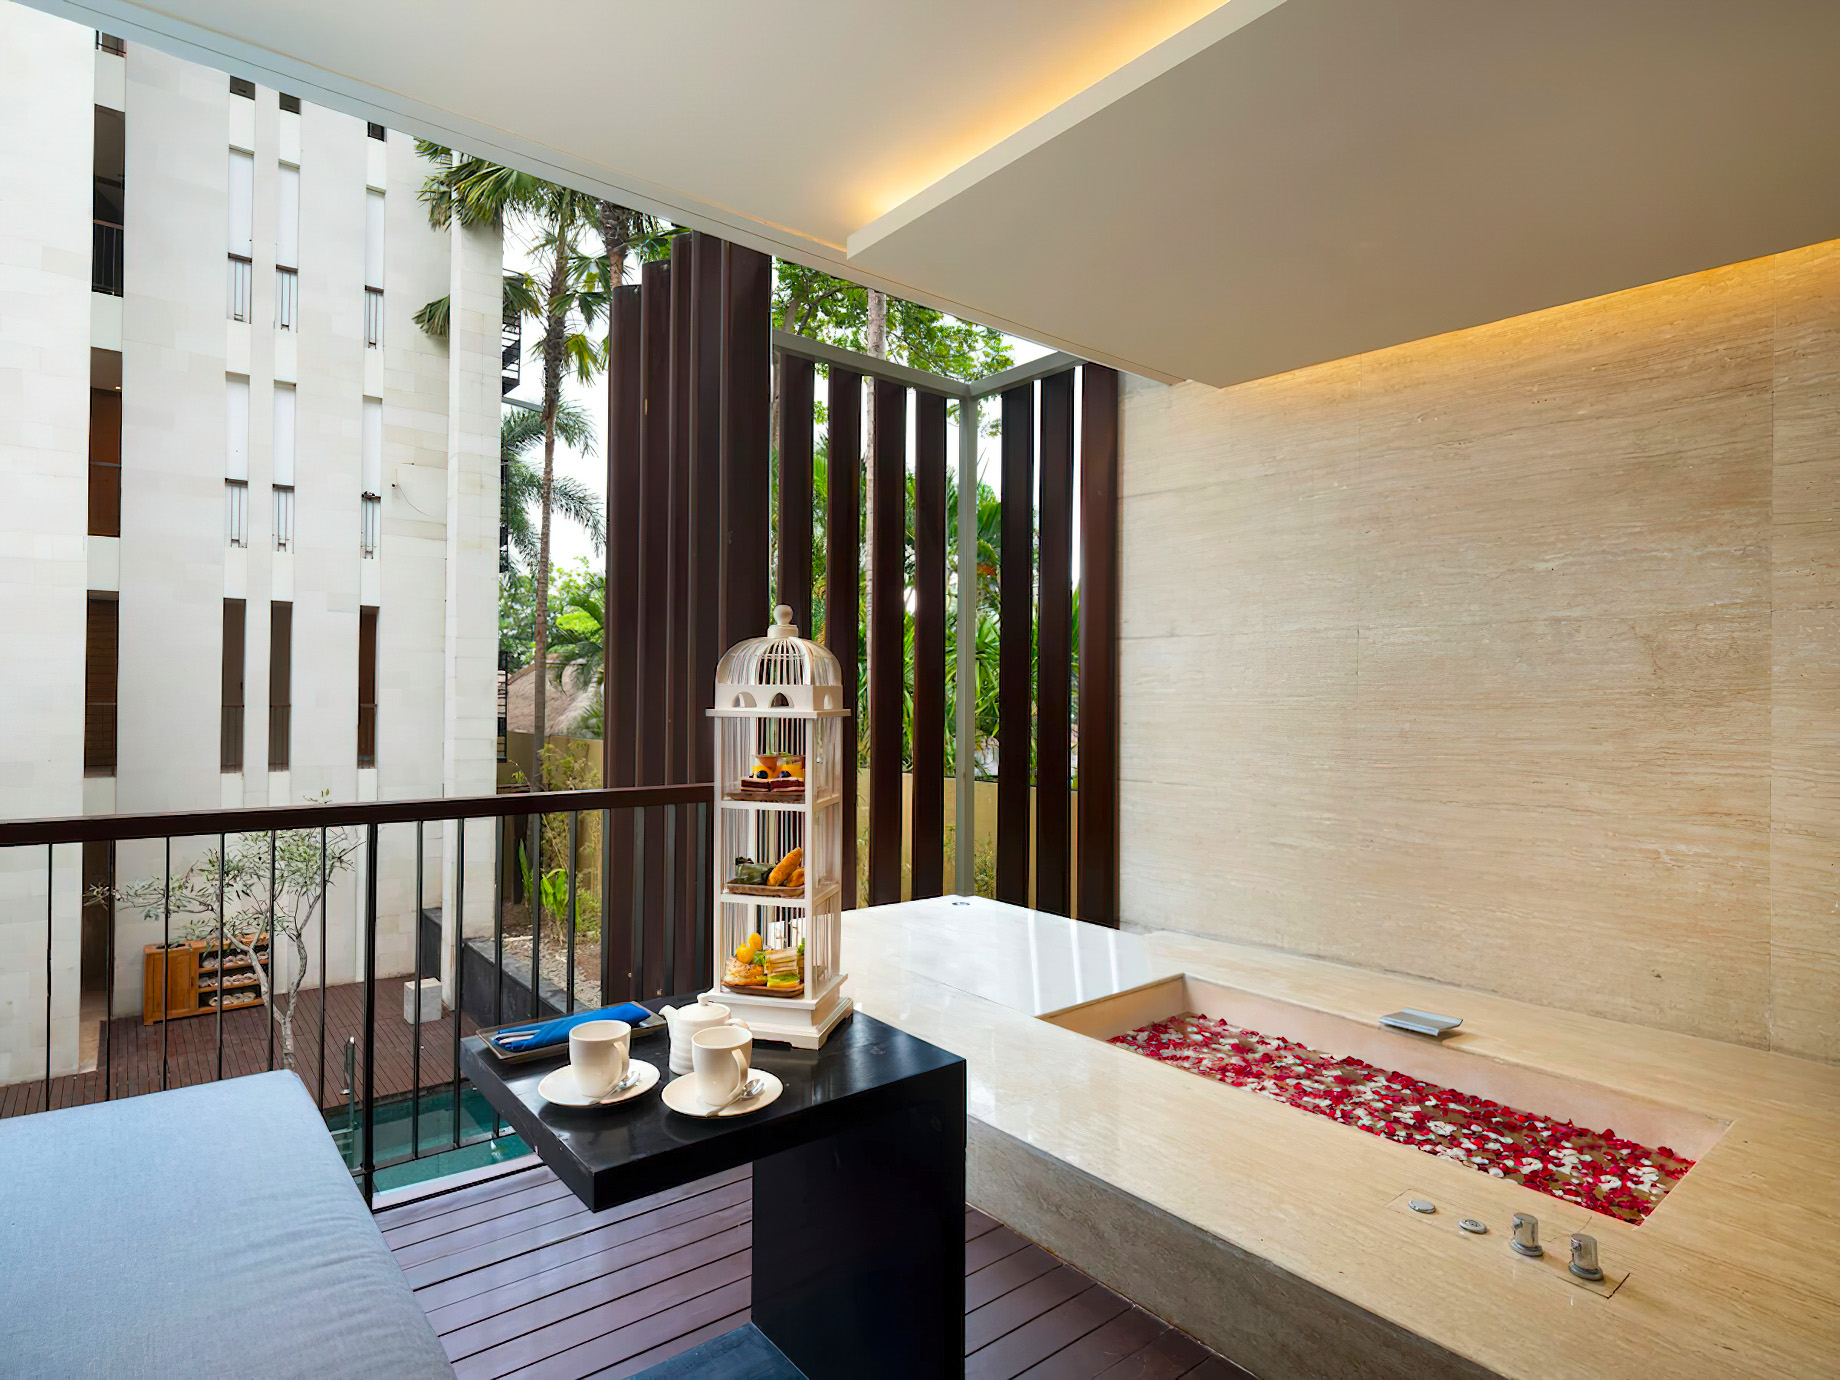 Anantara Seminyak Bali Resort – Bali, Indonesia – Guest Suite Terrace